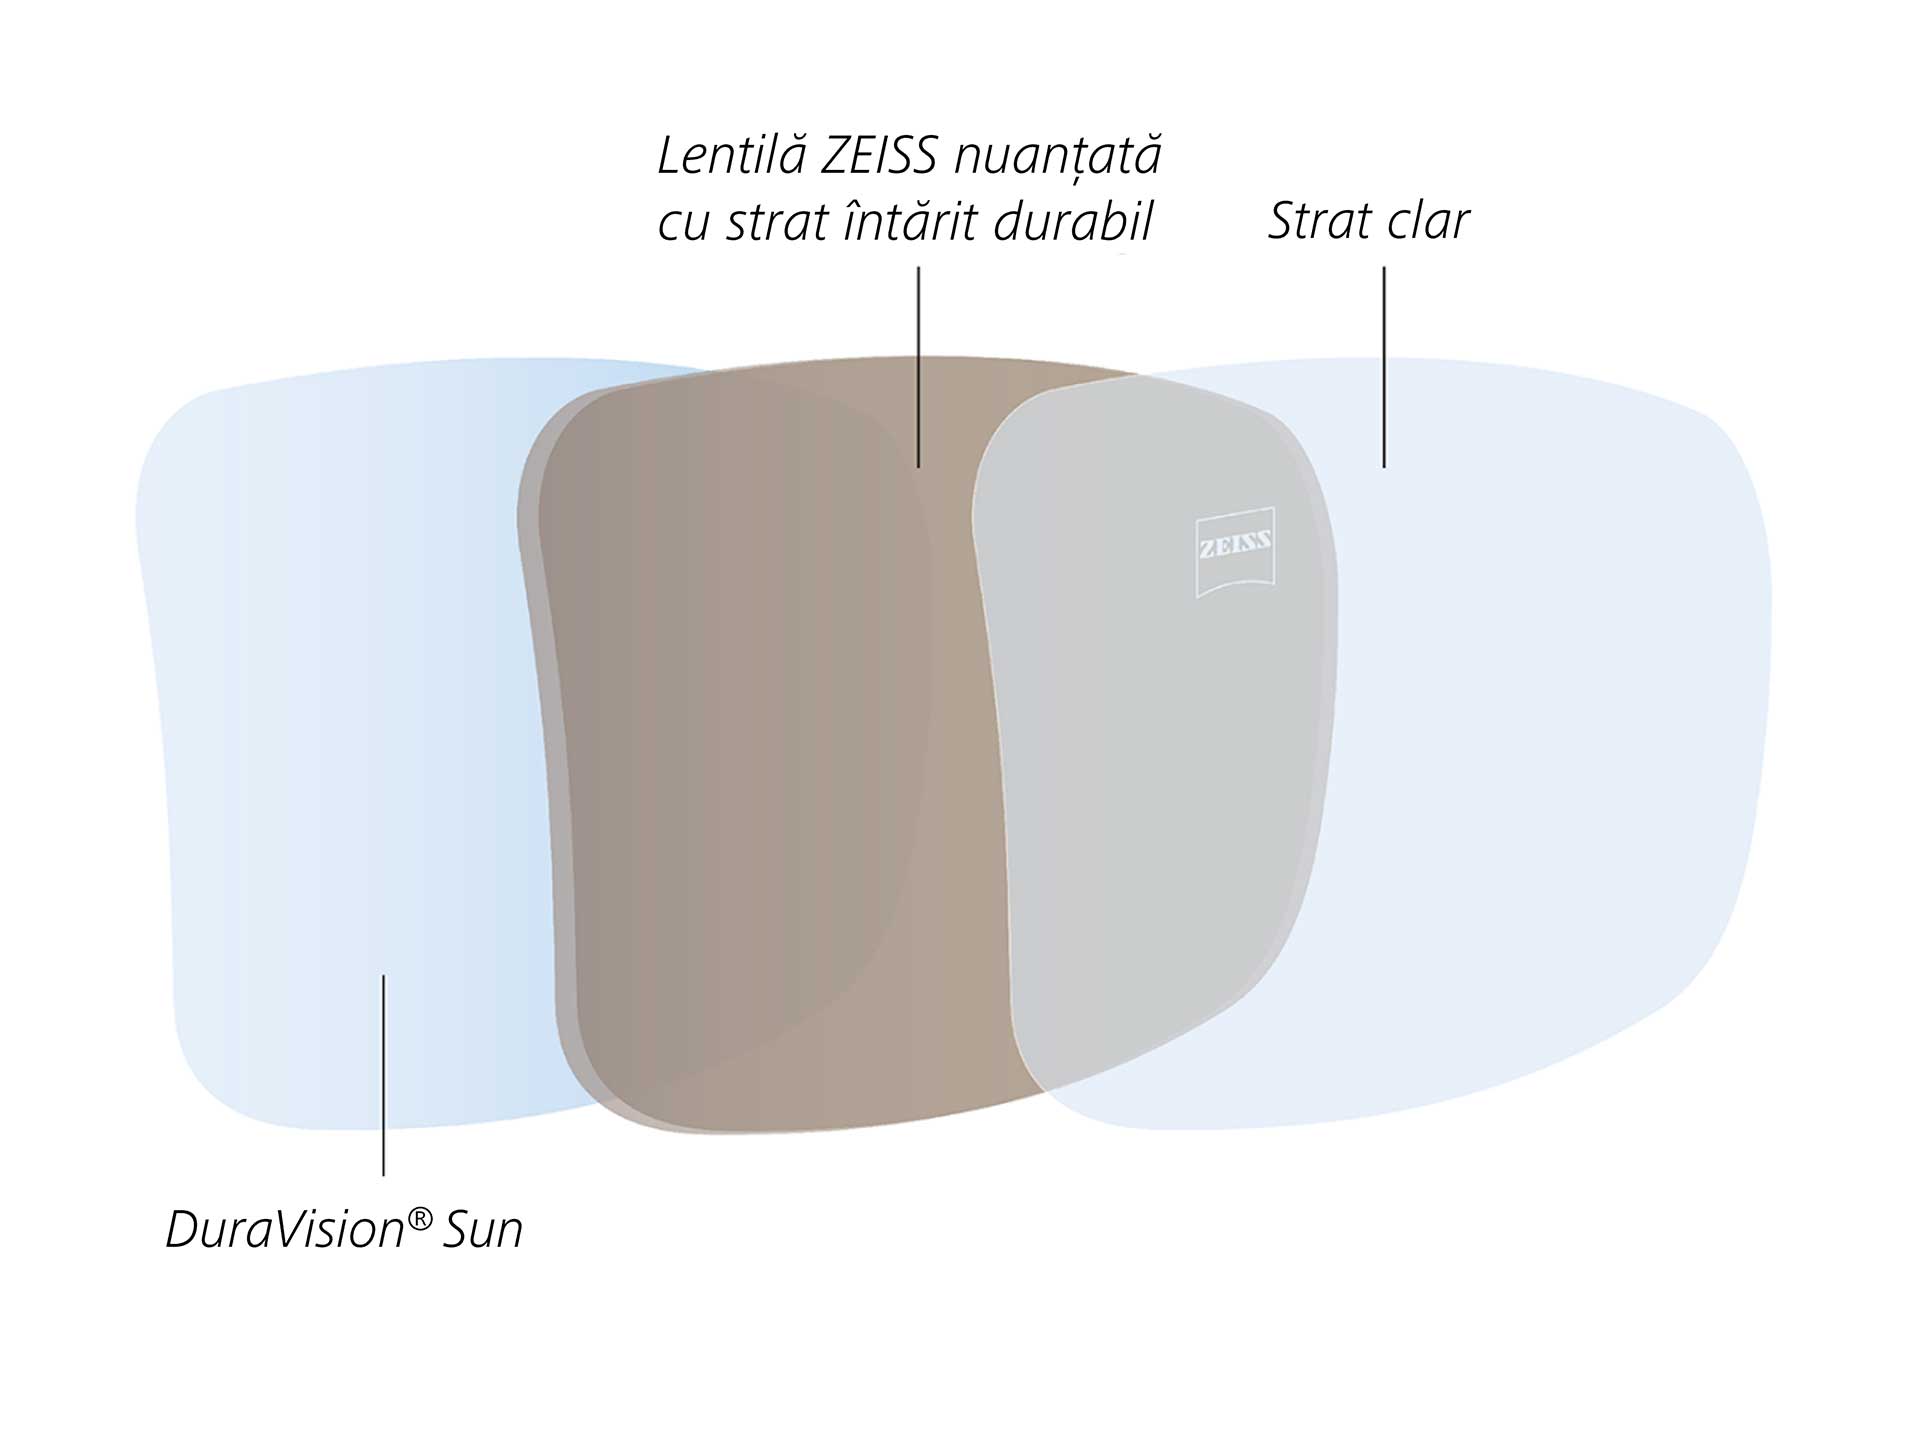 Ilustrație a suprafeței posterioare cu proprietăți hidrofobe și oleofobe, dezvoltate special pentru lentilele nuanțate 